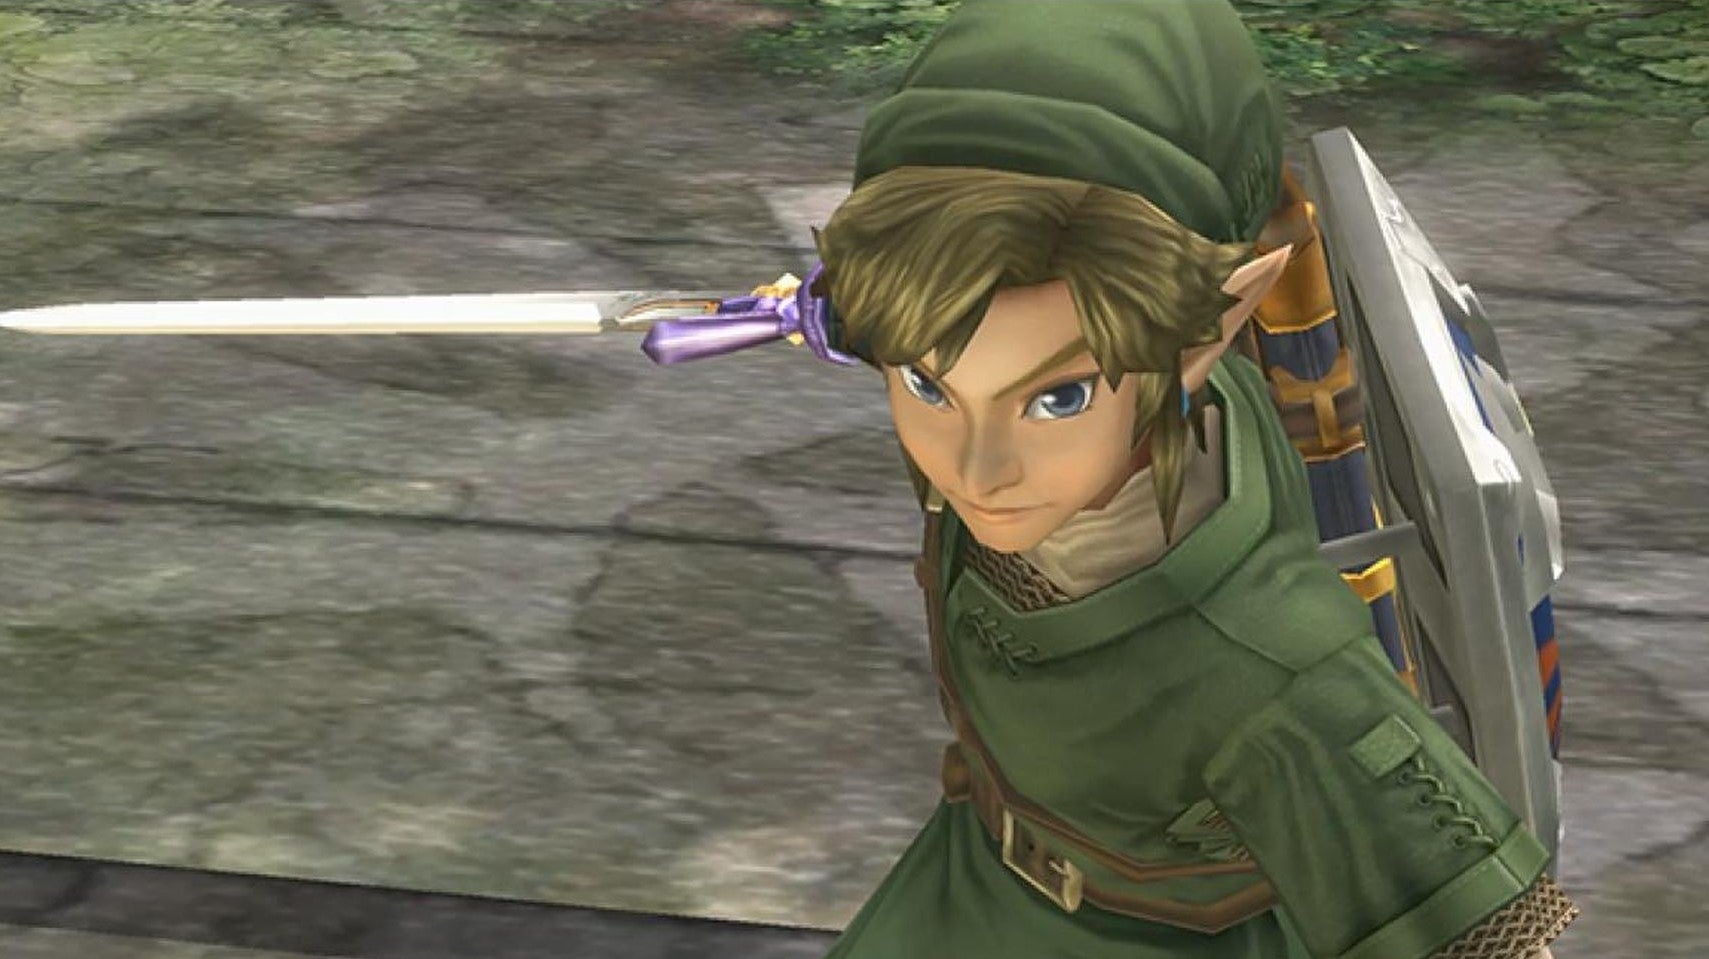 Bilder zu Zelda: Wind Waker und Twilight Princess für die Switch? Gerücht macht seine Runde